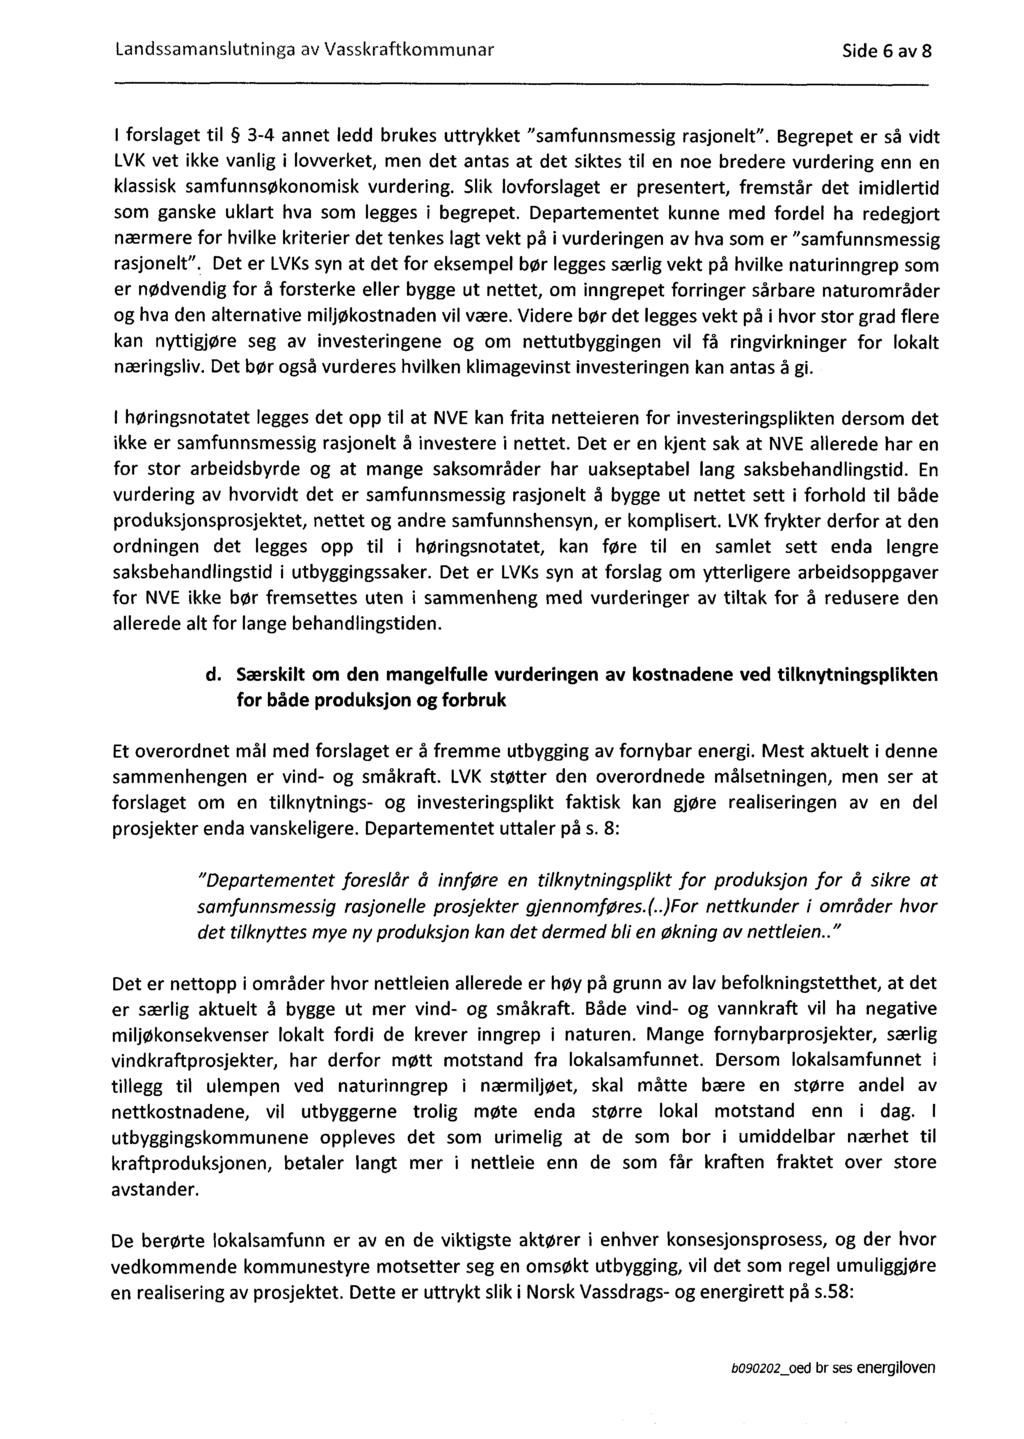 Landssamanslutninga av Vasskraftkommunar Side 6 av 8 I forslaget til 3-4 annet ledd brukes uttrykket "samfunnsmessig rasjonelt".